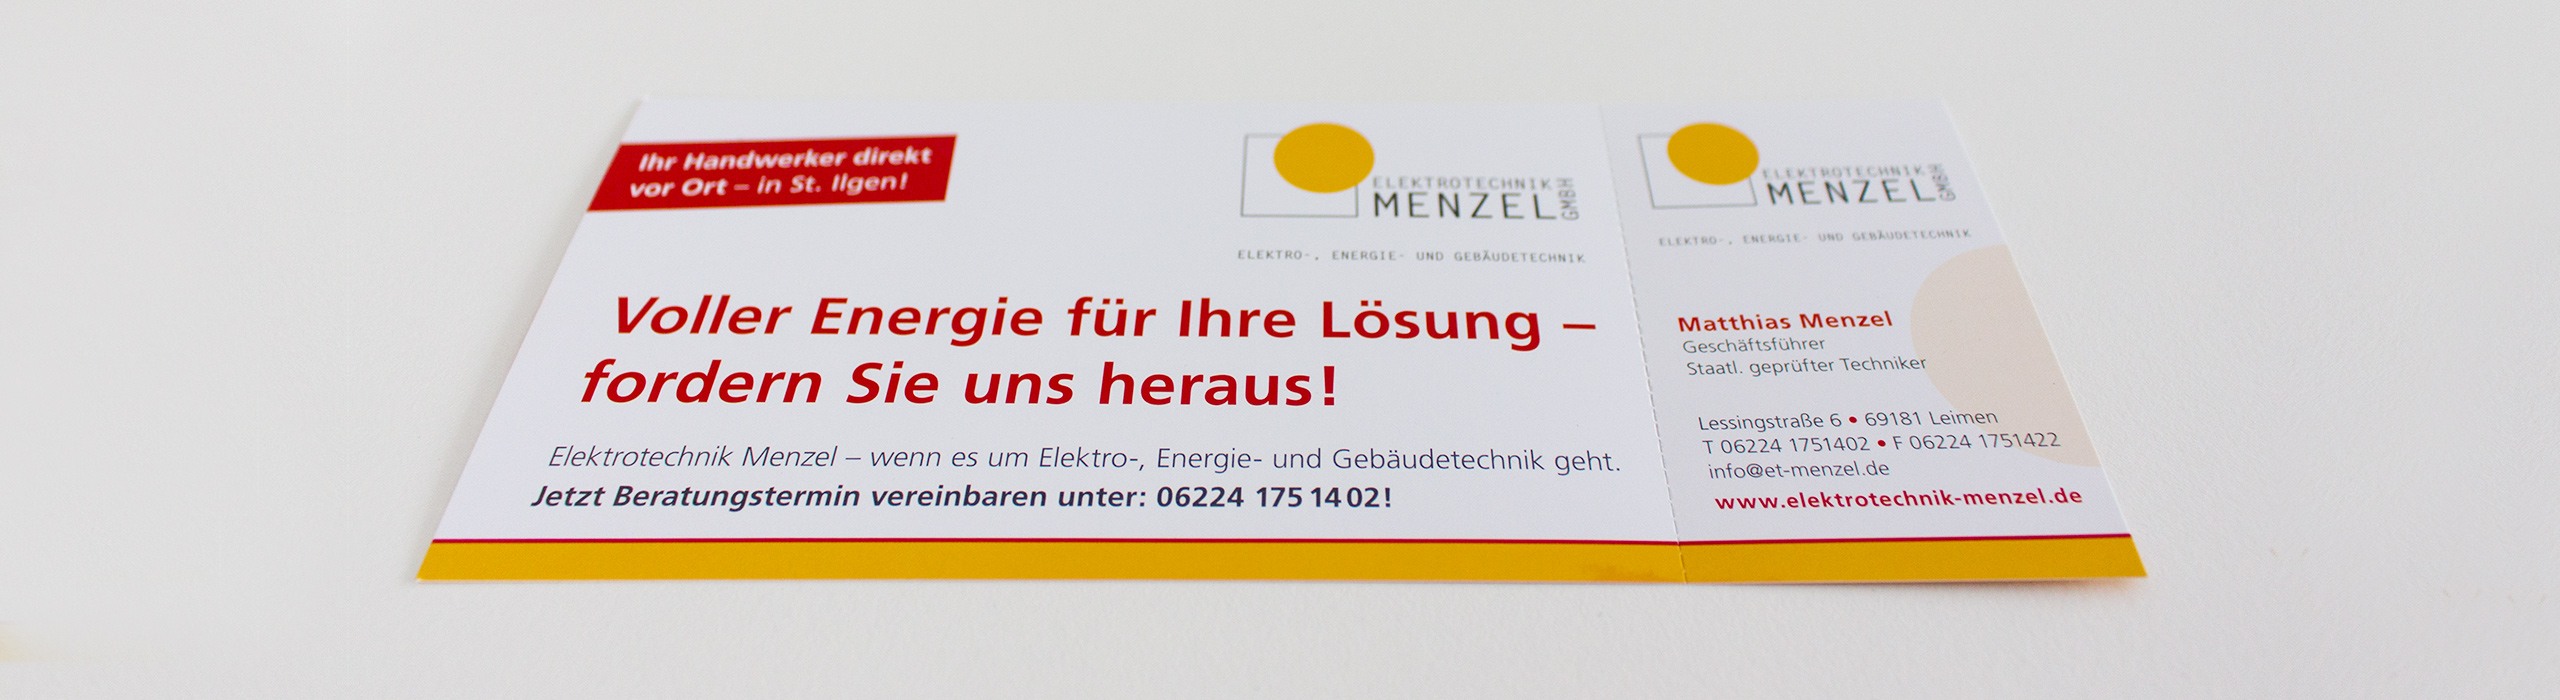 Flyer für Elektrotechnik Menzel mit Perforation zum abtrennen der Visitenkarte